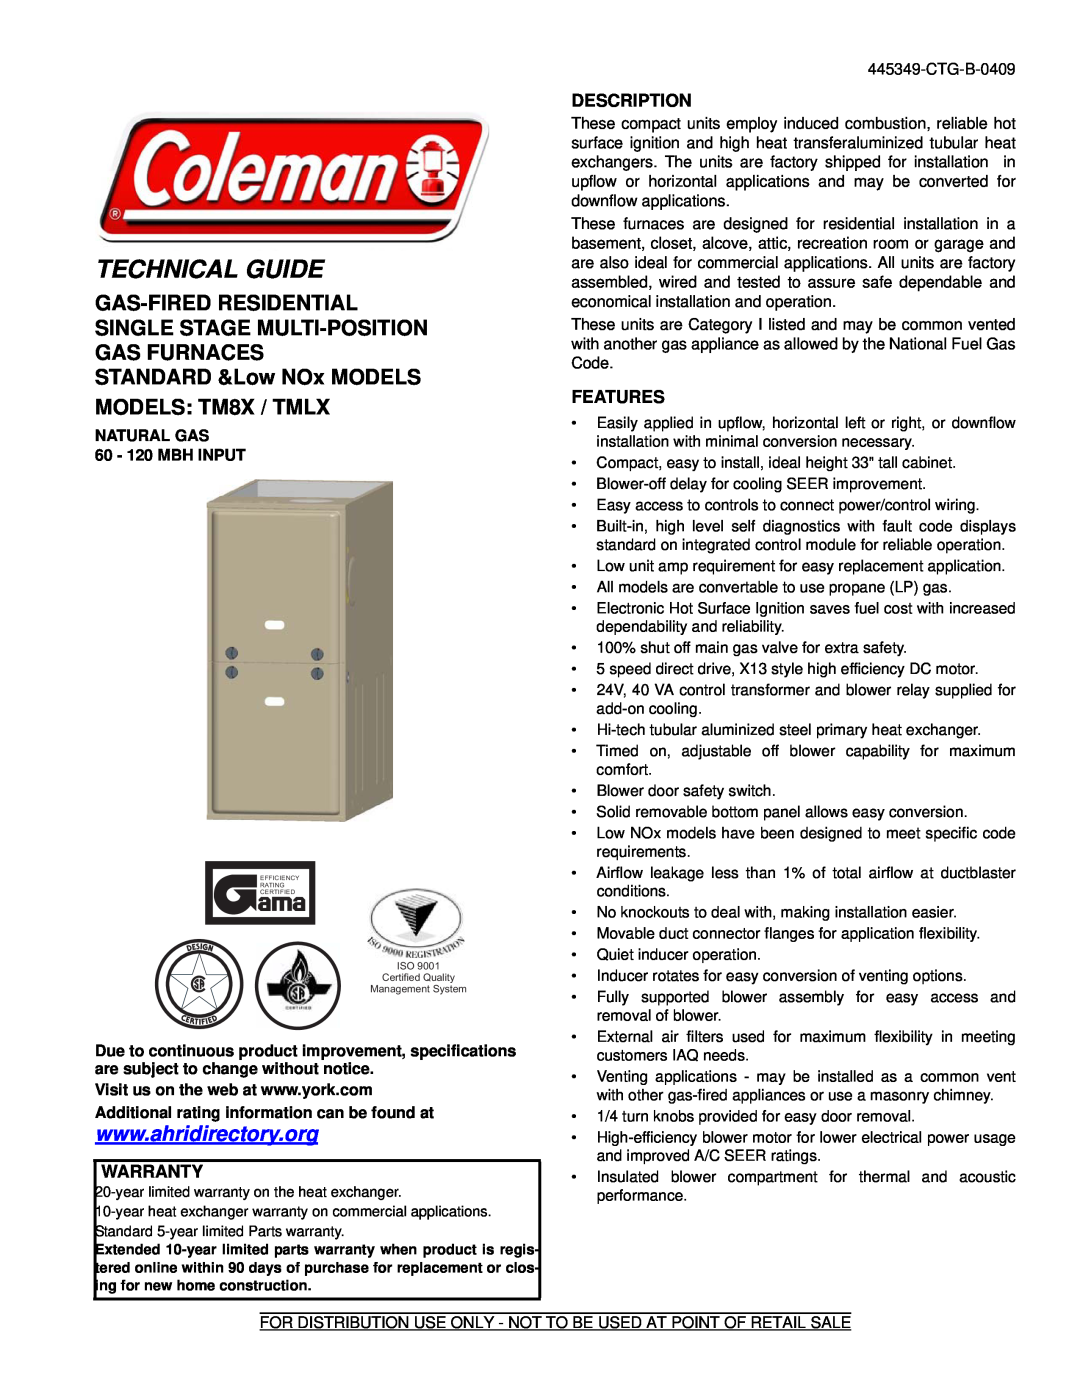 Coleman 445349-CTG-B-0409, TM8X warranty Warranty, Description, Features, NATURAL GAS 60 - 120 MBH INPUT, Technical Guide 